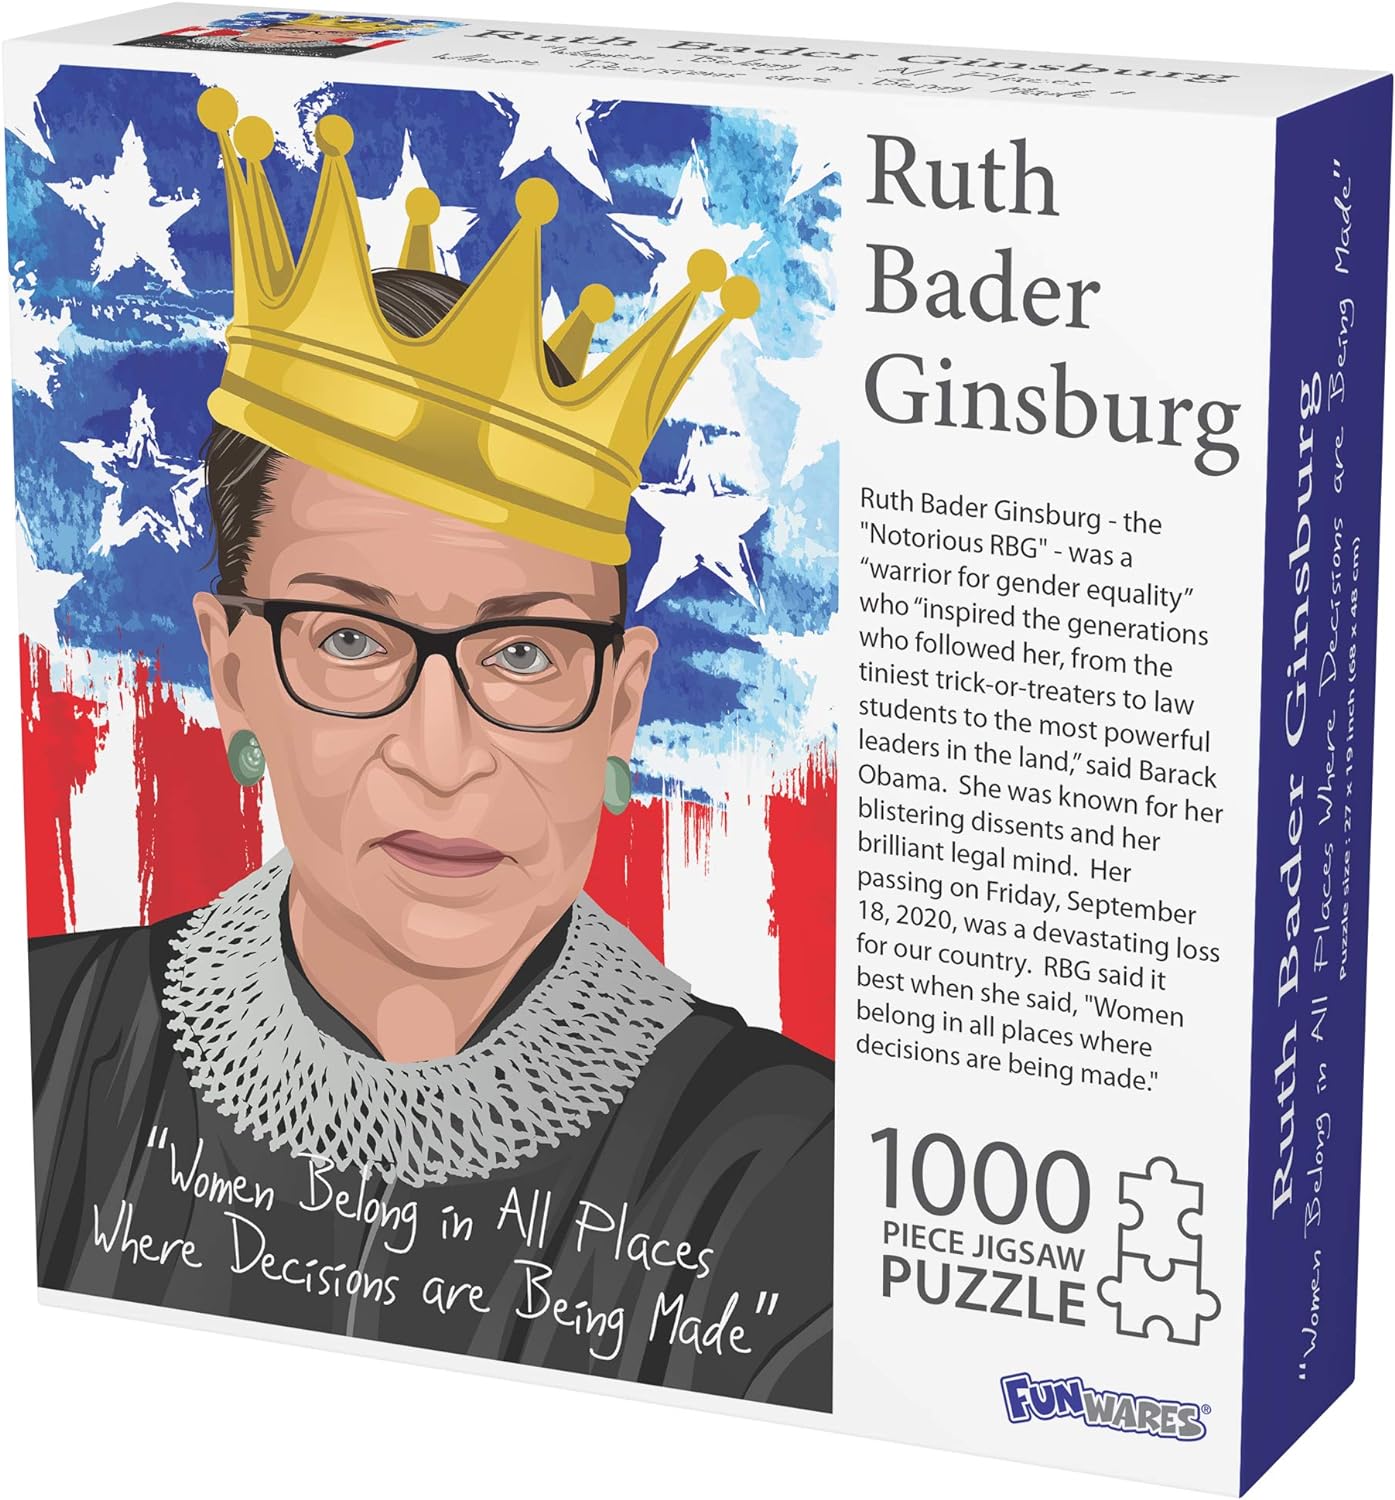 Ruth Bader Ginsburg Puzzle